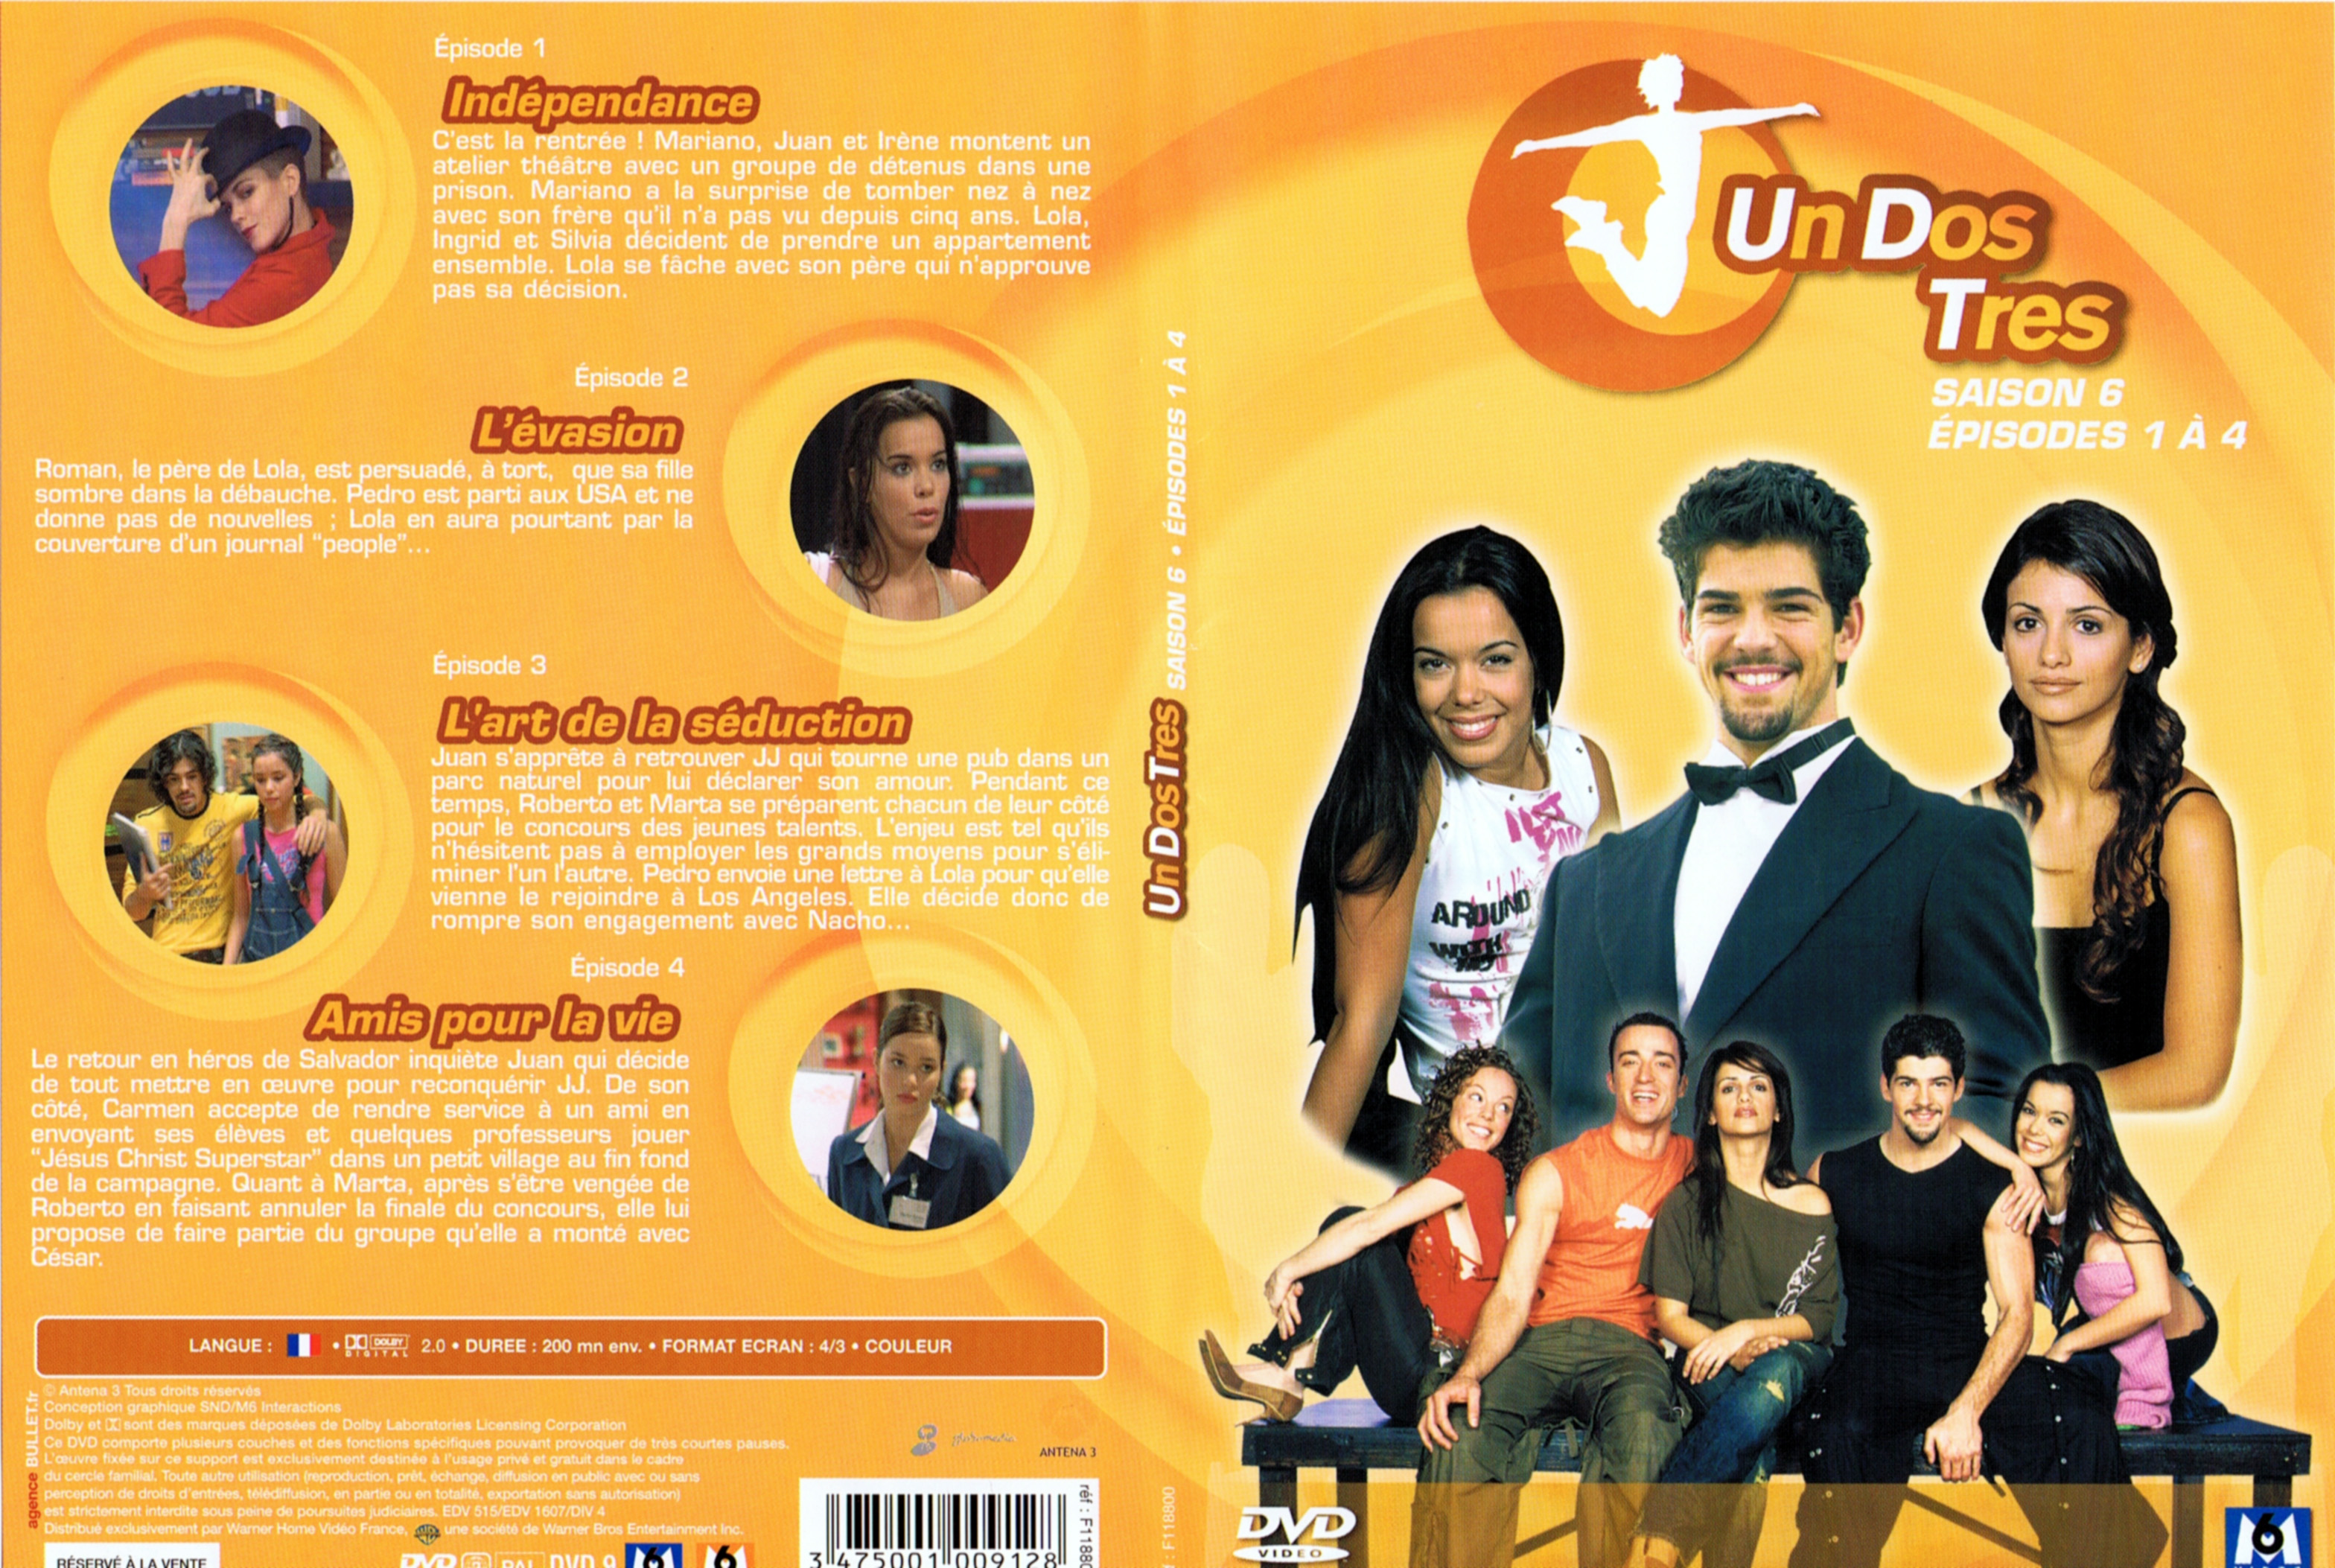 Jaquette DVD Un dos tres Saison 6 DVD 1